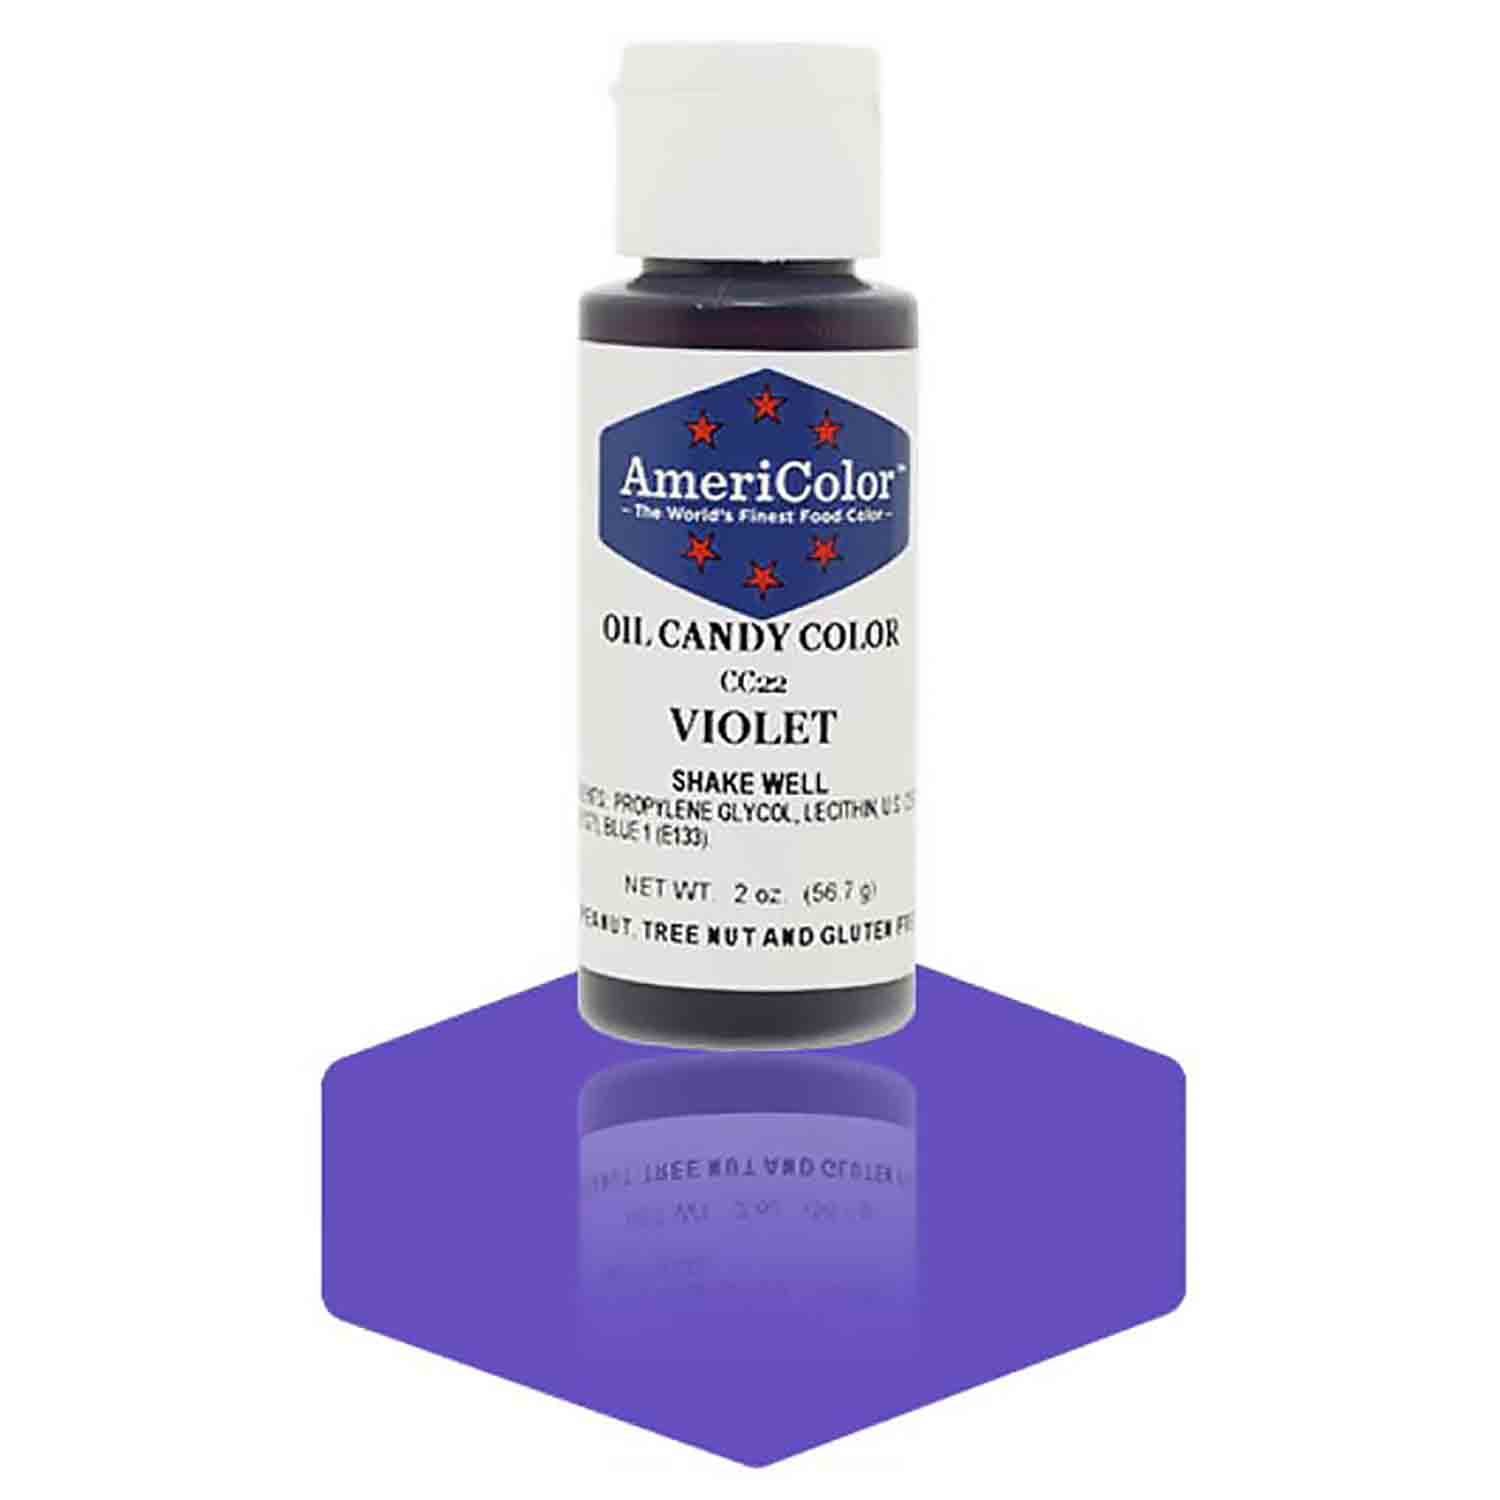 Violet Americolor Oil Based Food Color